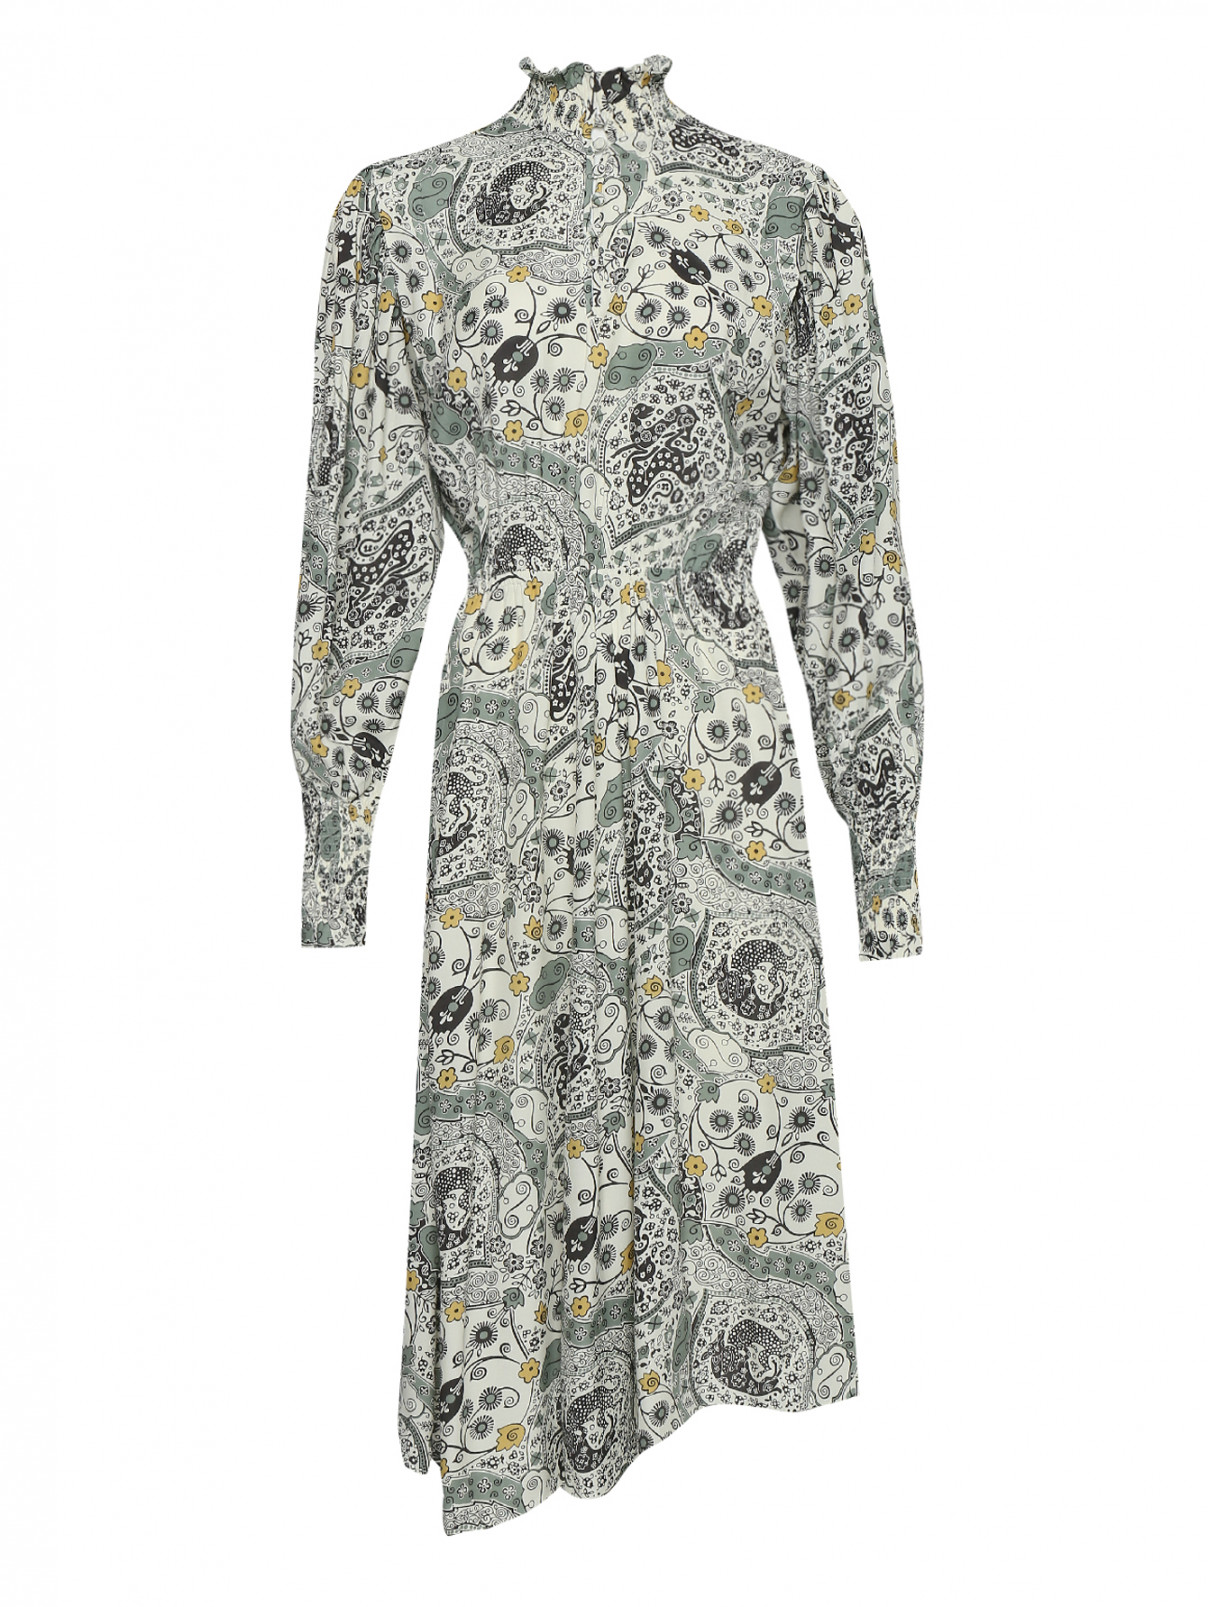 Платье с цветочным узором, с резинкой на талии Isabel Marant  –  Общий вид  – Цвет:  Узор